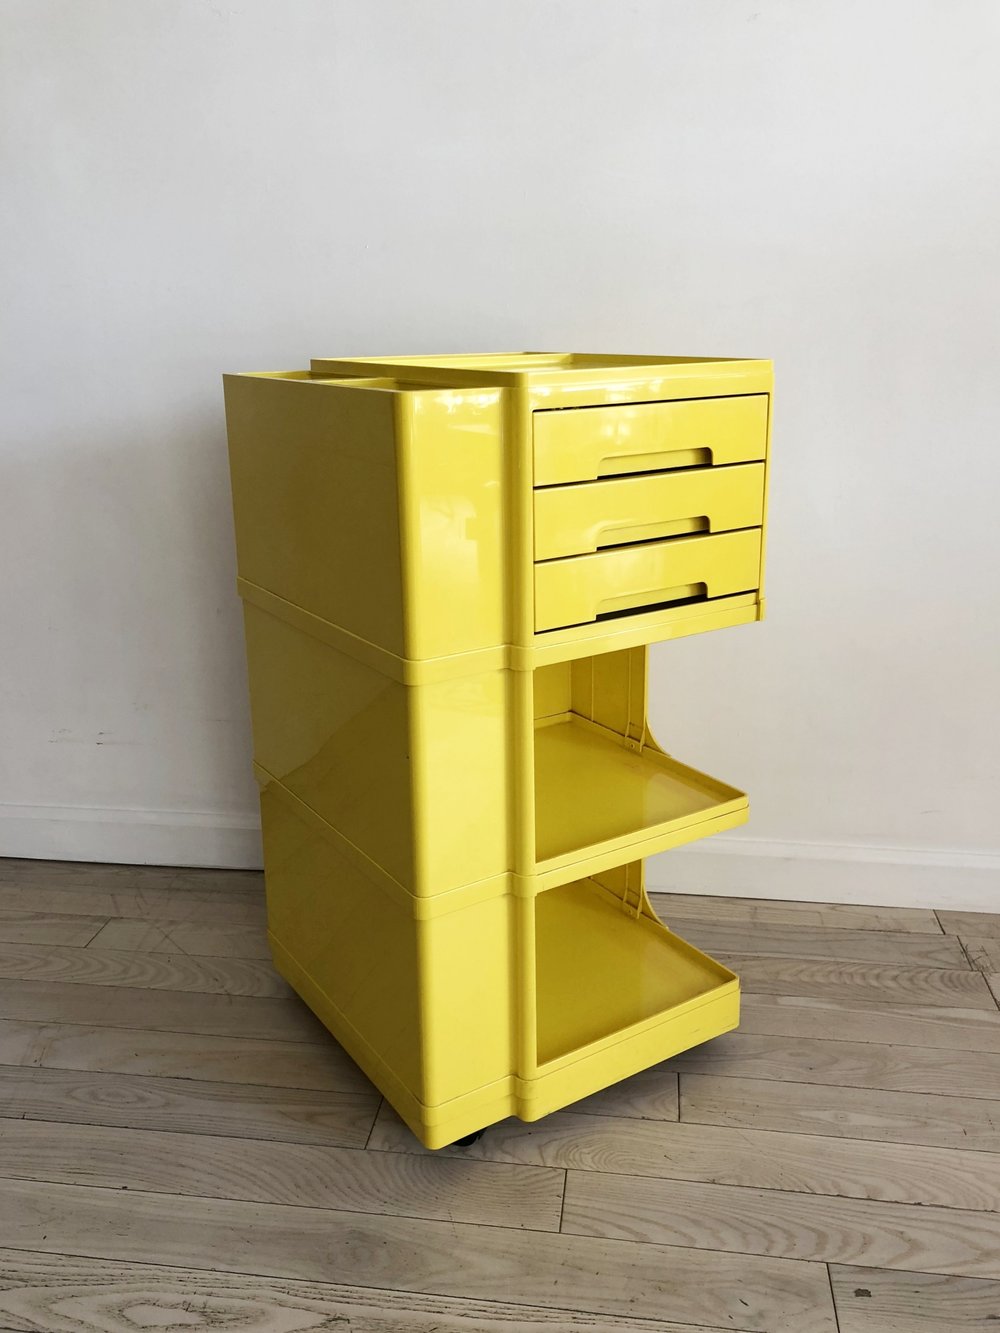 1970s Italian Yellow Plastic Art Cart Designed by Giovanni Pelis for Stile Neolt